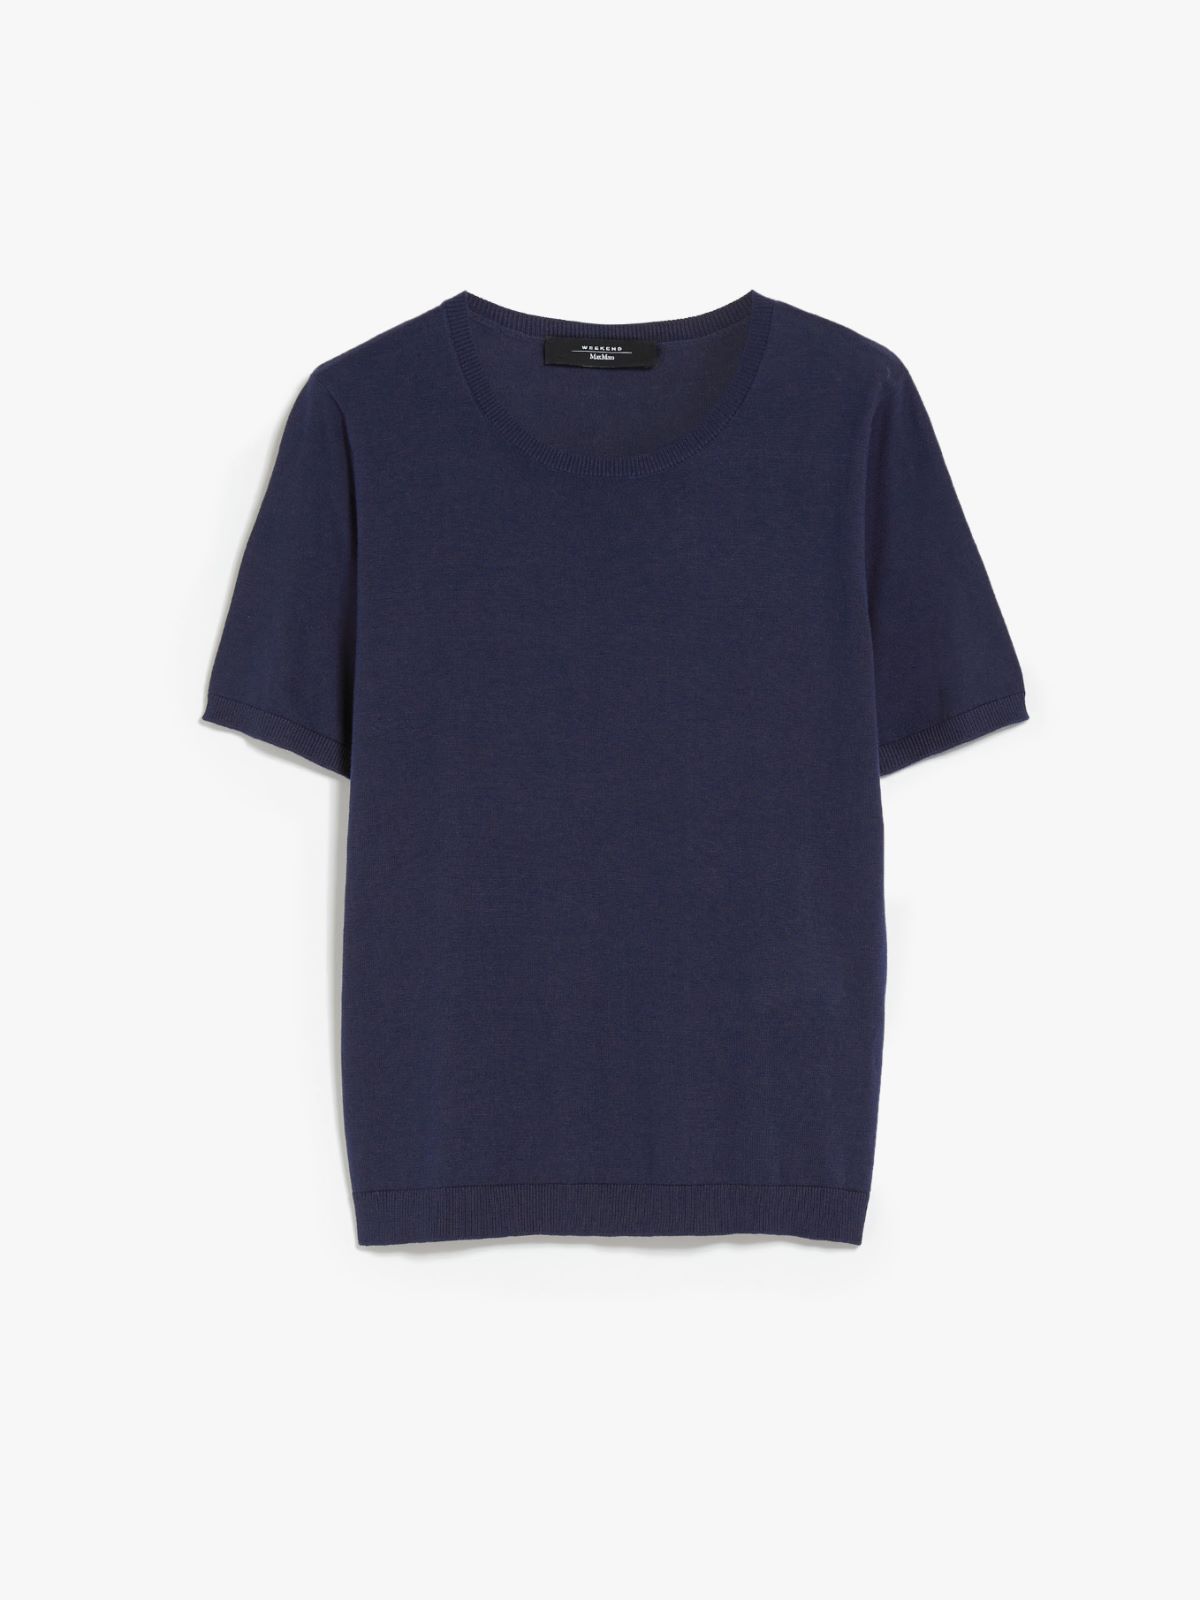 Silk blend knit T-shirt - NAVY - Weekend Max Mara - 6